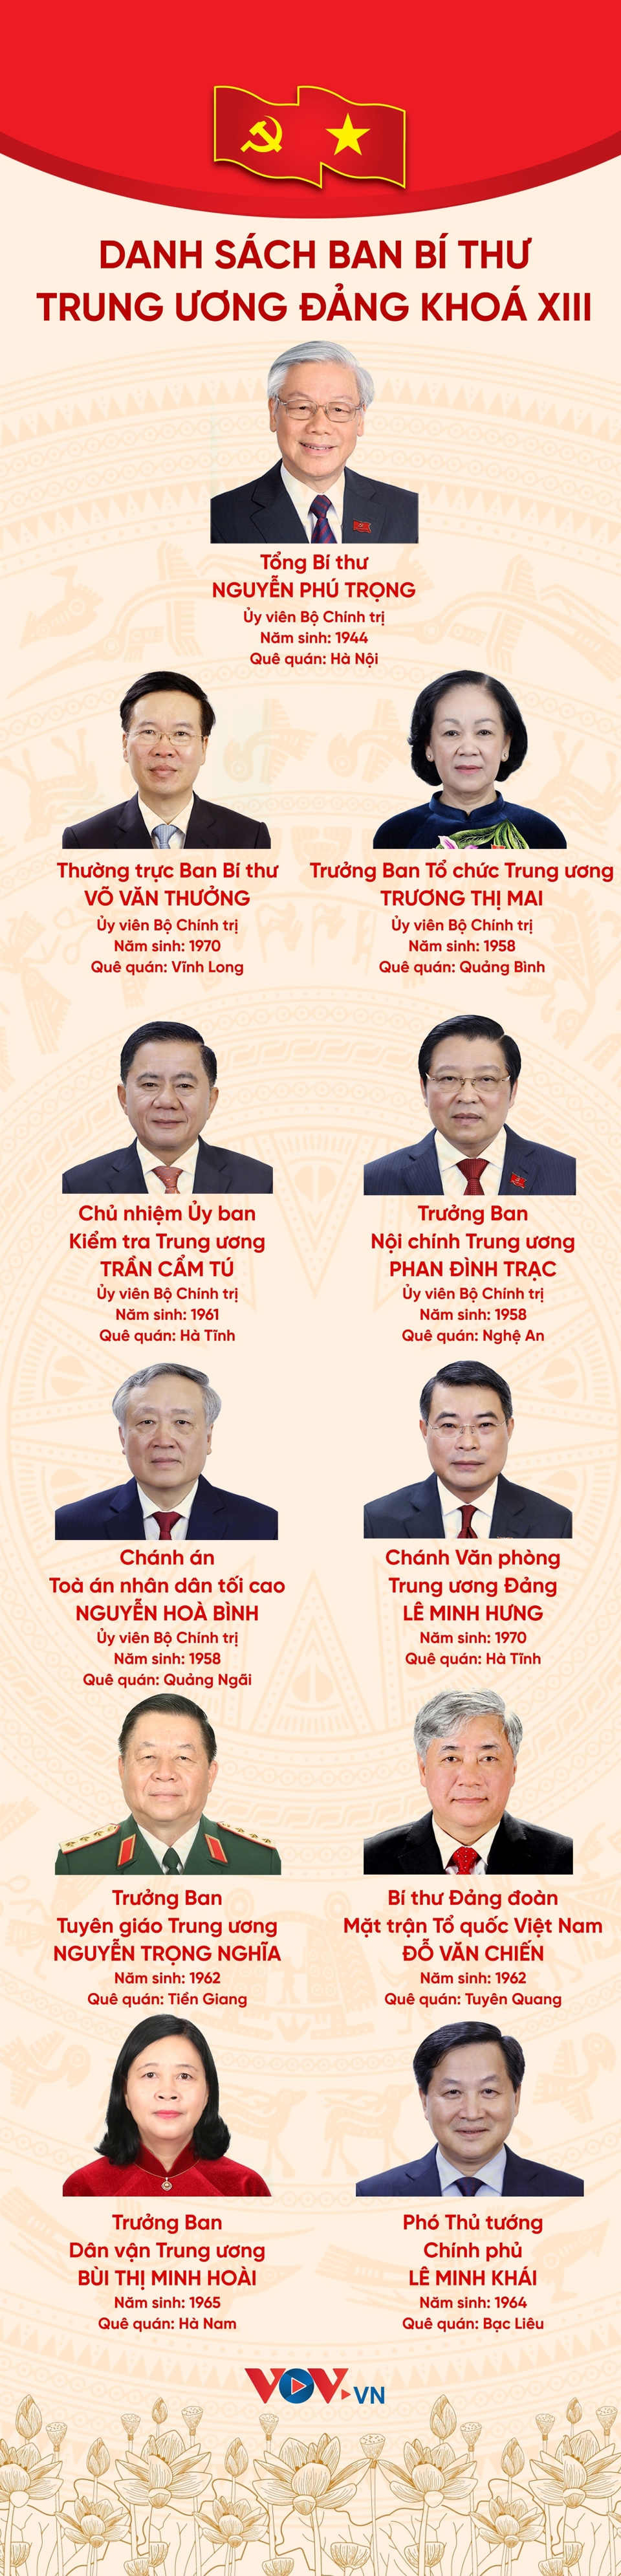 [Infographic] Danh sách Ban Bí thư Trung ương Đảng khóa XIII - Ảnh 1